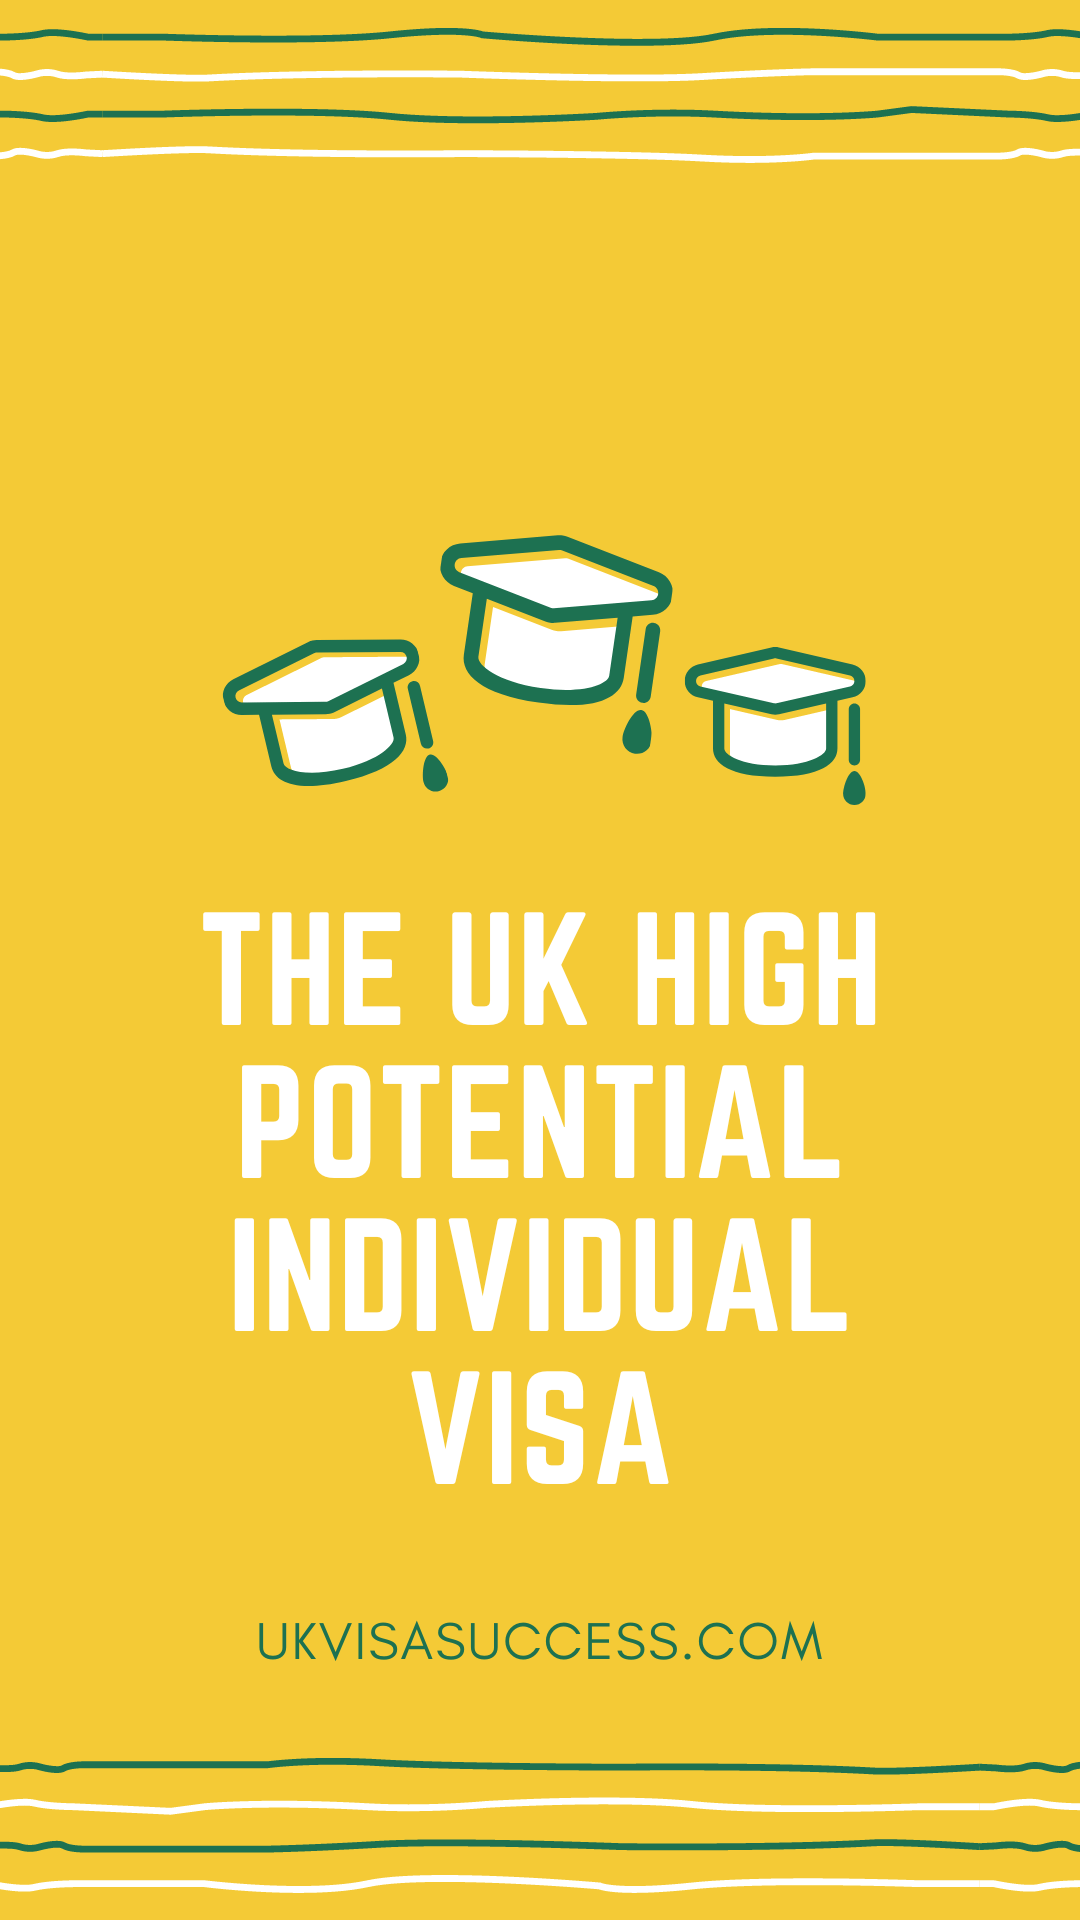 The UK High Potential Individual Visa